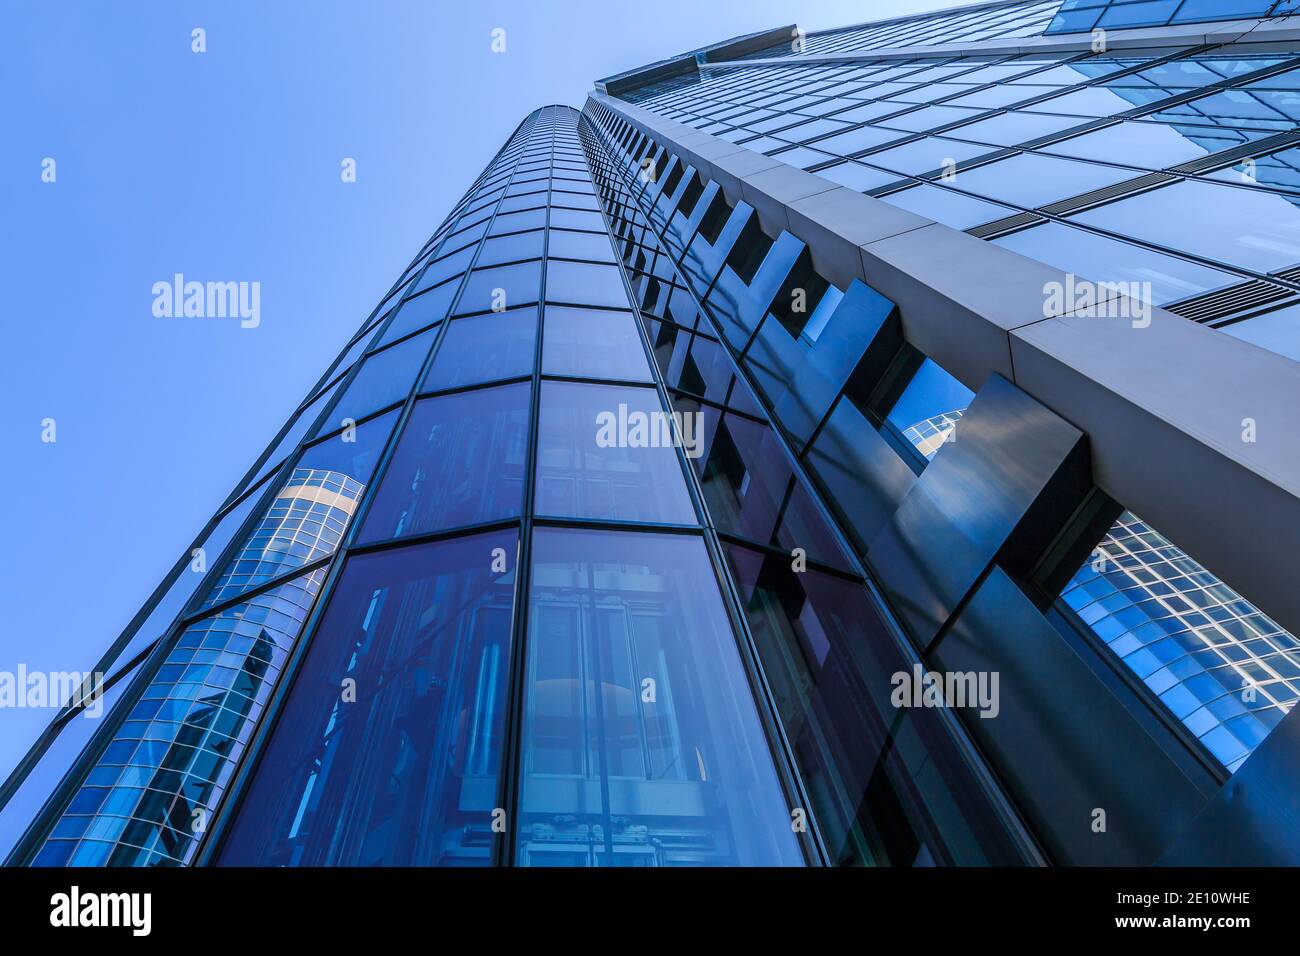 Glasfassade eines Hochhauses in Frankfurt. Blick entlang eines Wolkenkratzers mit Reflexionen in den Fenstern. Haus des Finanz- und Geschäftsviertels w Stockfoto